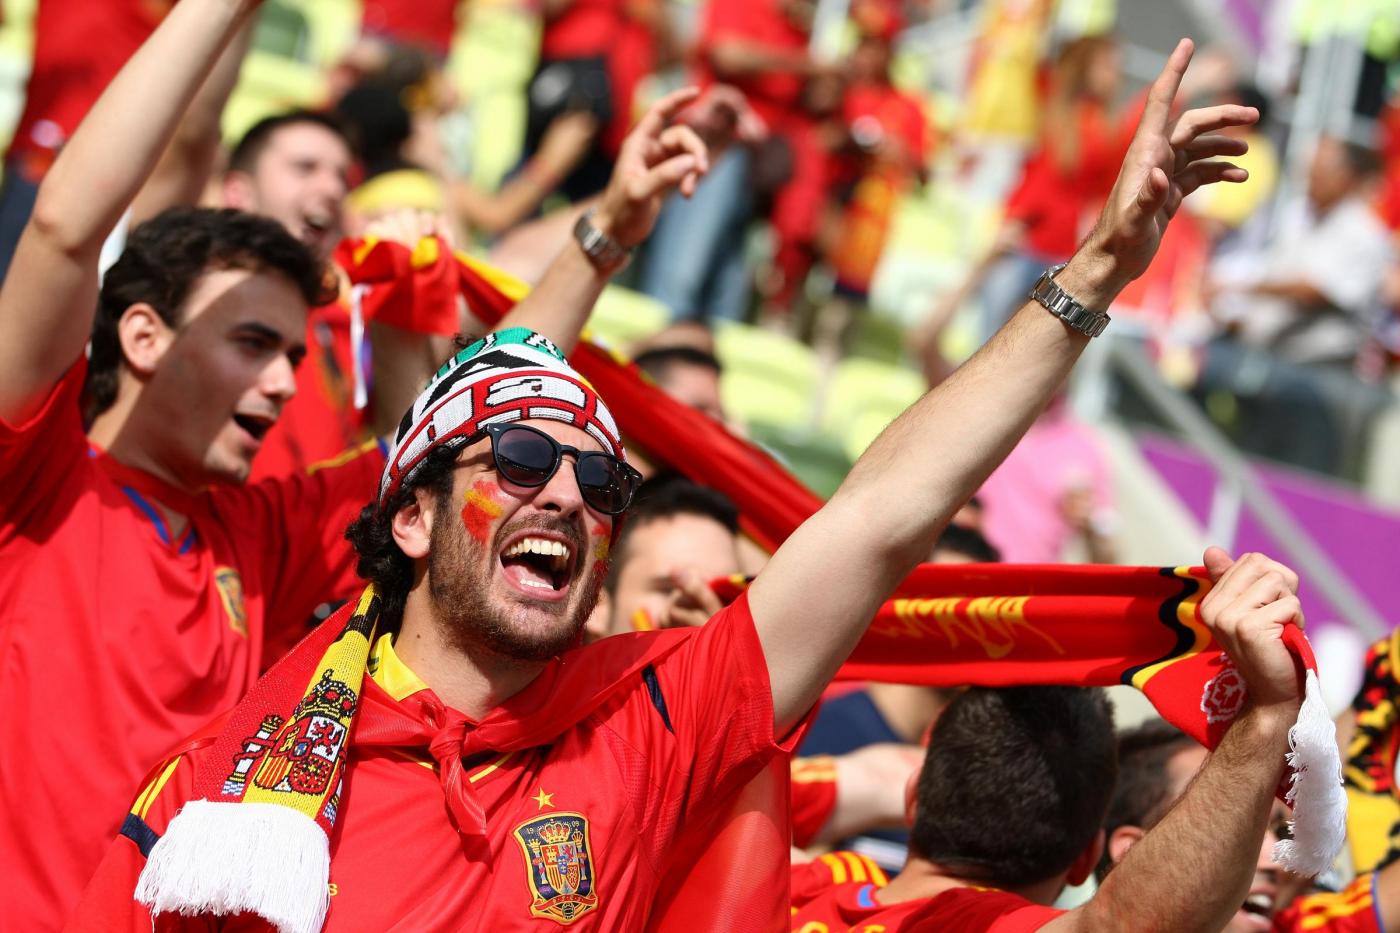 Copa del Rey, Calahorra-Castellon 12 settembre: analisi e pronostico della giornata dedicata ai 64esimi di finale della coppa spagnola